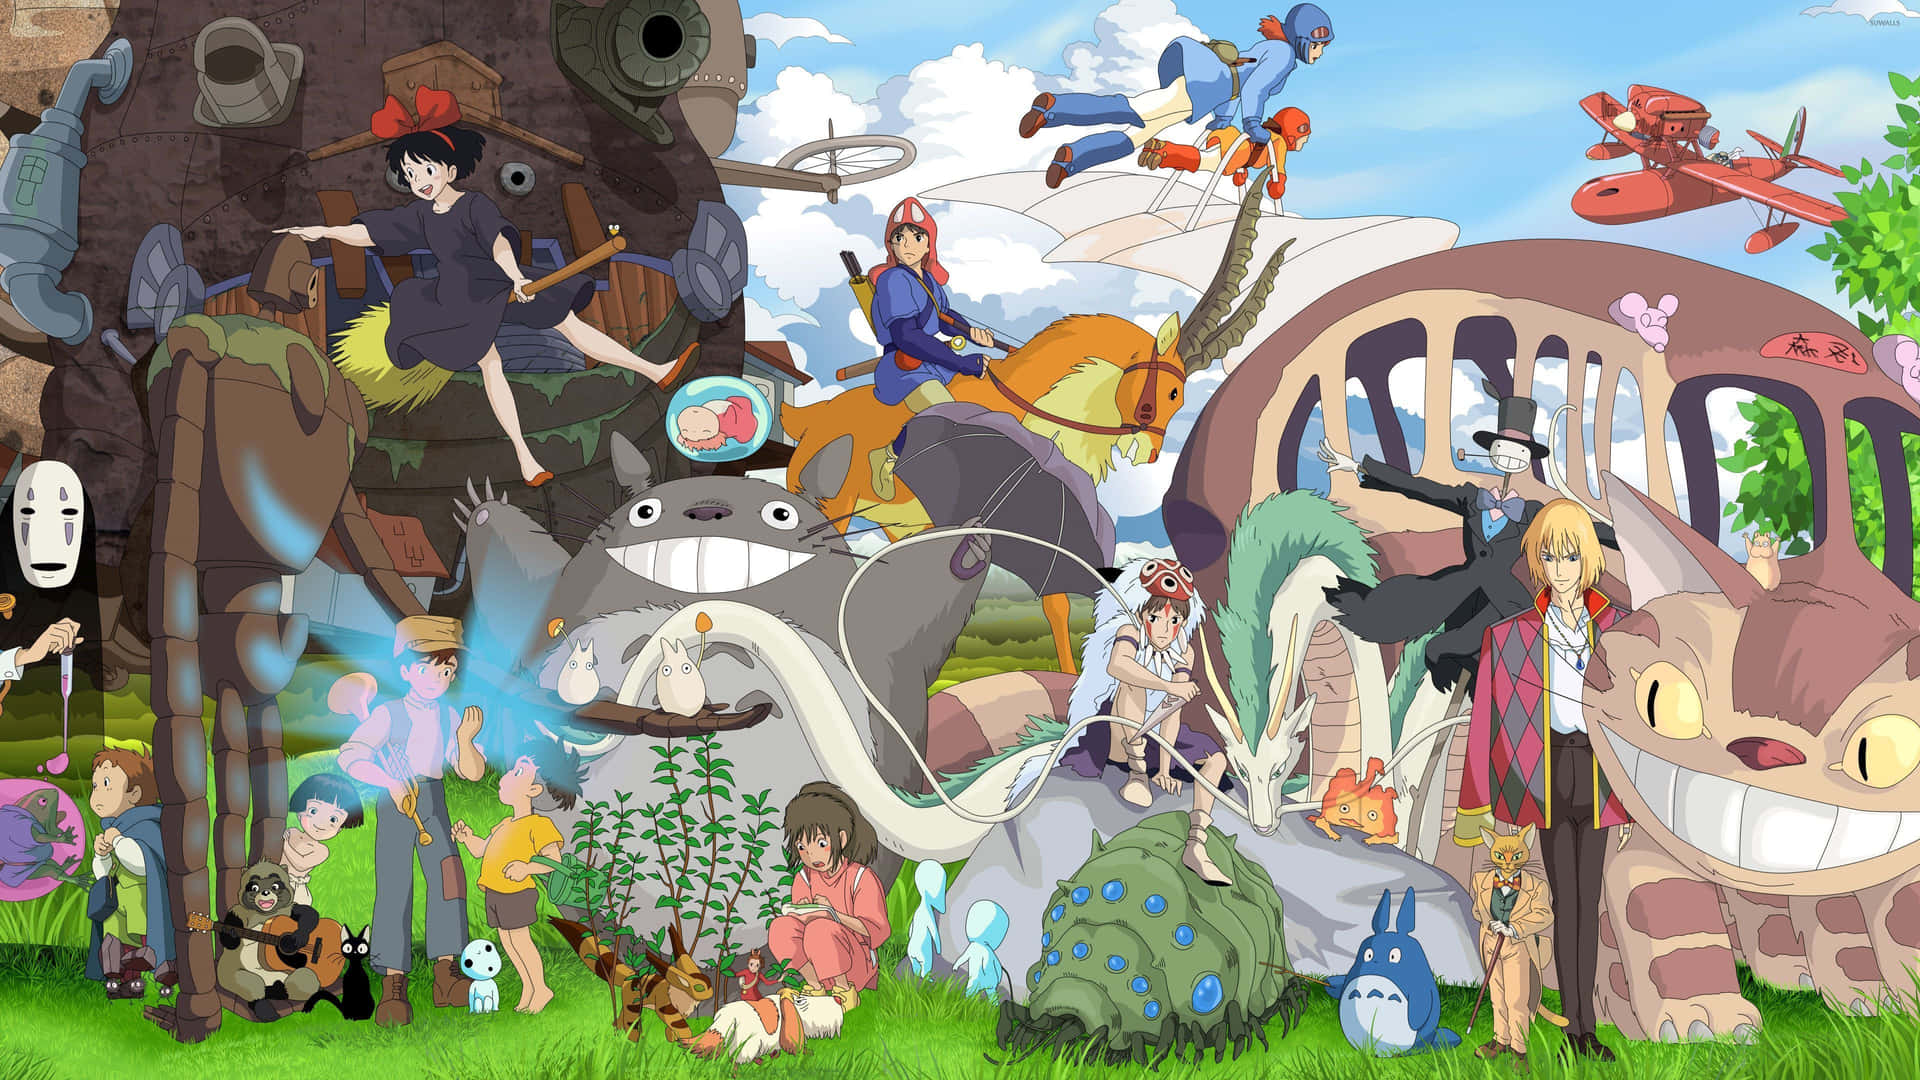 Umpapel De Parede Para Desktop Surrealista E Criativo, Apresentando Os Personagens Mais Amados Do Studio Ghibli. Papel de Parede